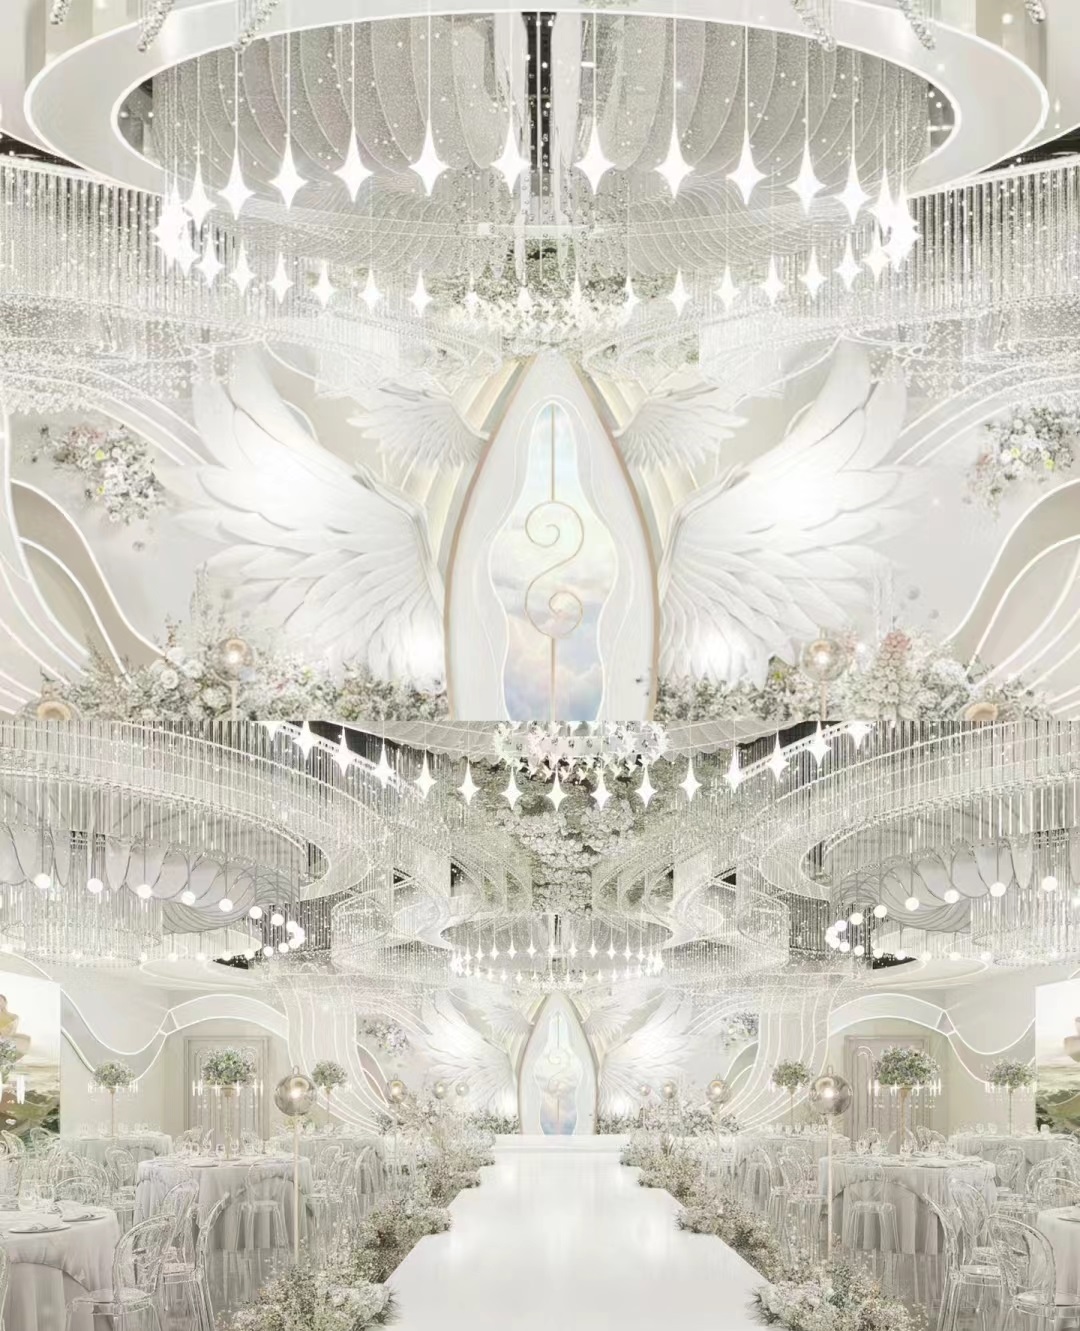 Dutti LED Modern Non-standard Chandelier Large Crystal Ceiling Pendant Lighting OEM custom for Wedding Ballroom